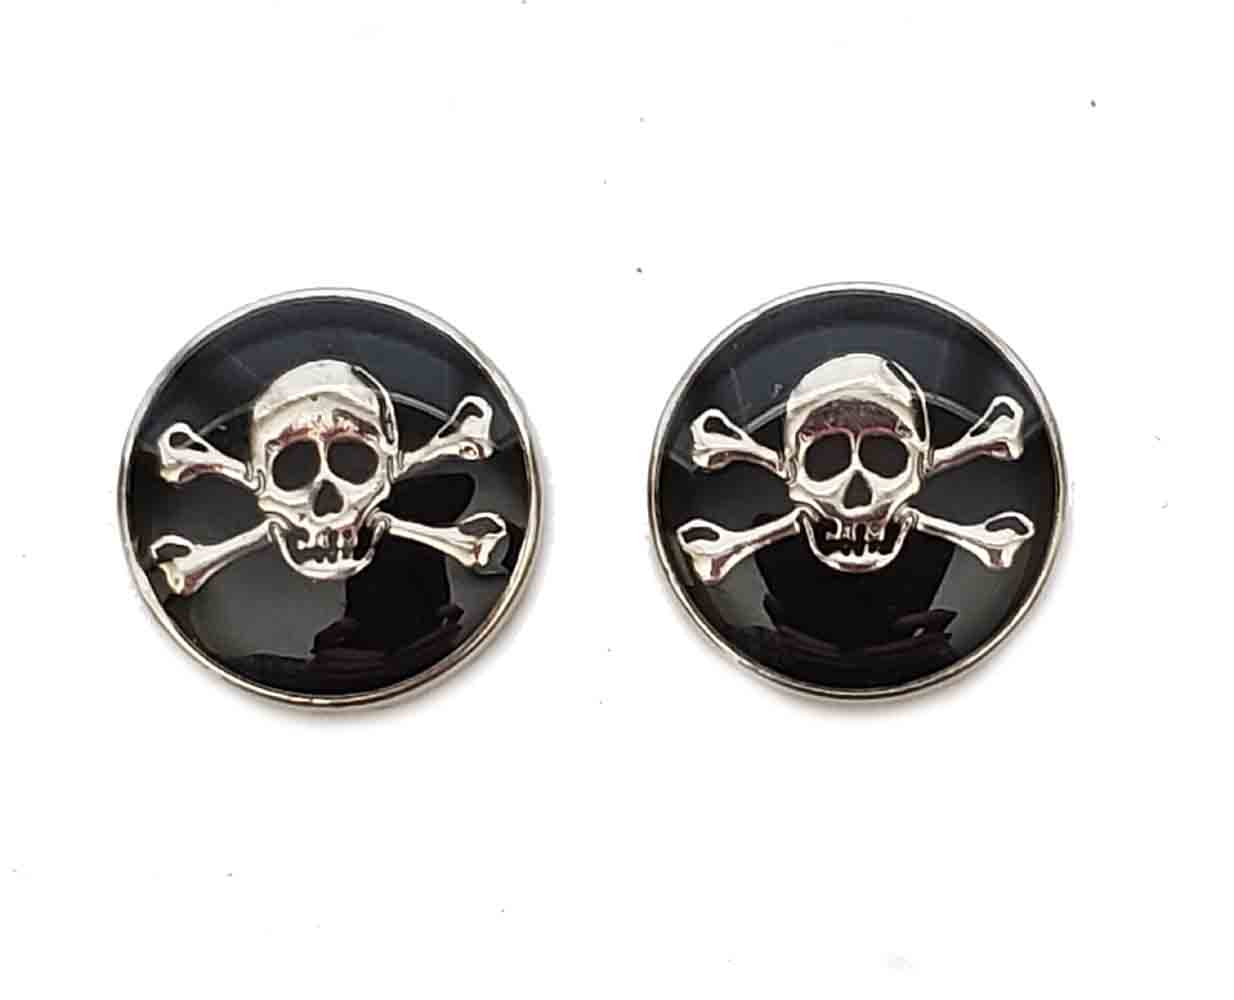 Two German Skull & Crossbones Blazer Buttons Enamel Metal Silver Black Men's